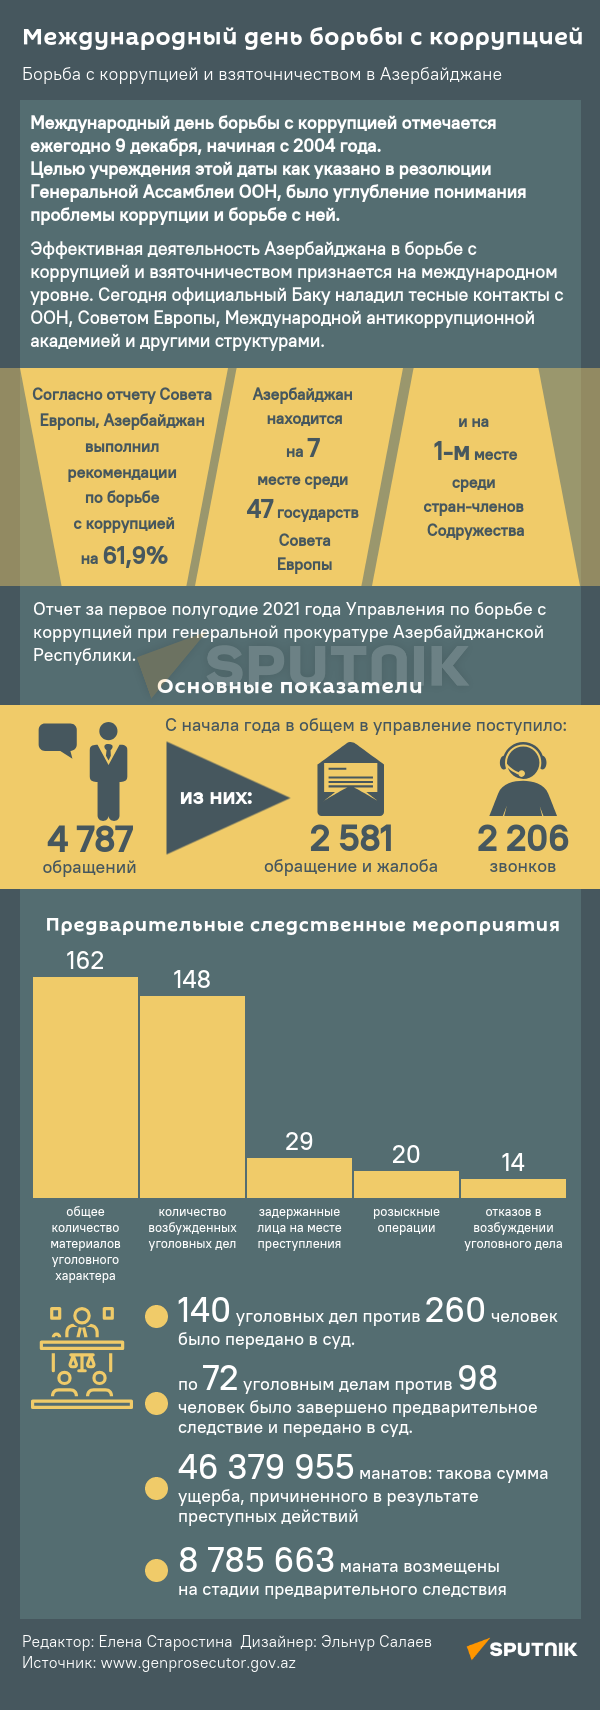 Инфографика: Международный день борьбы с коррупцией - Sputnik Азербайджан